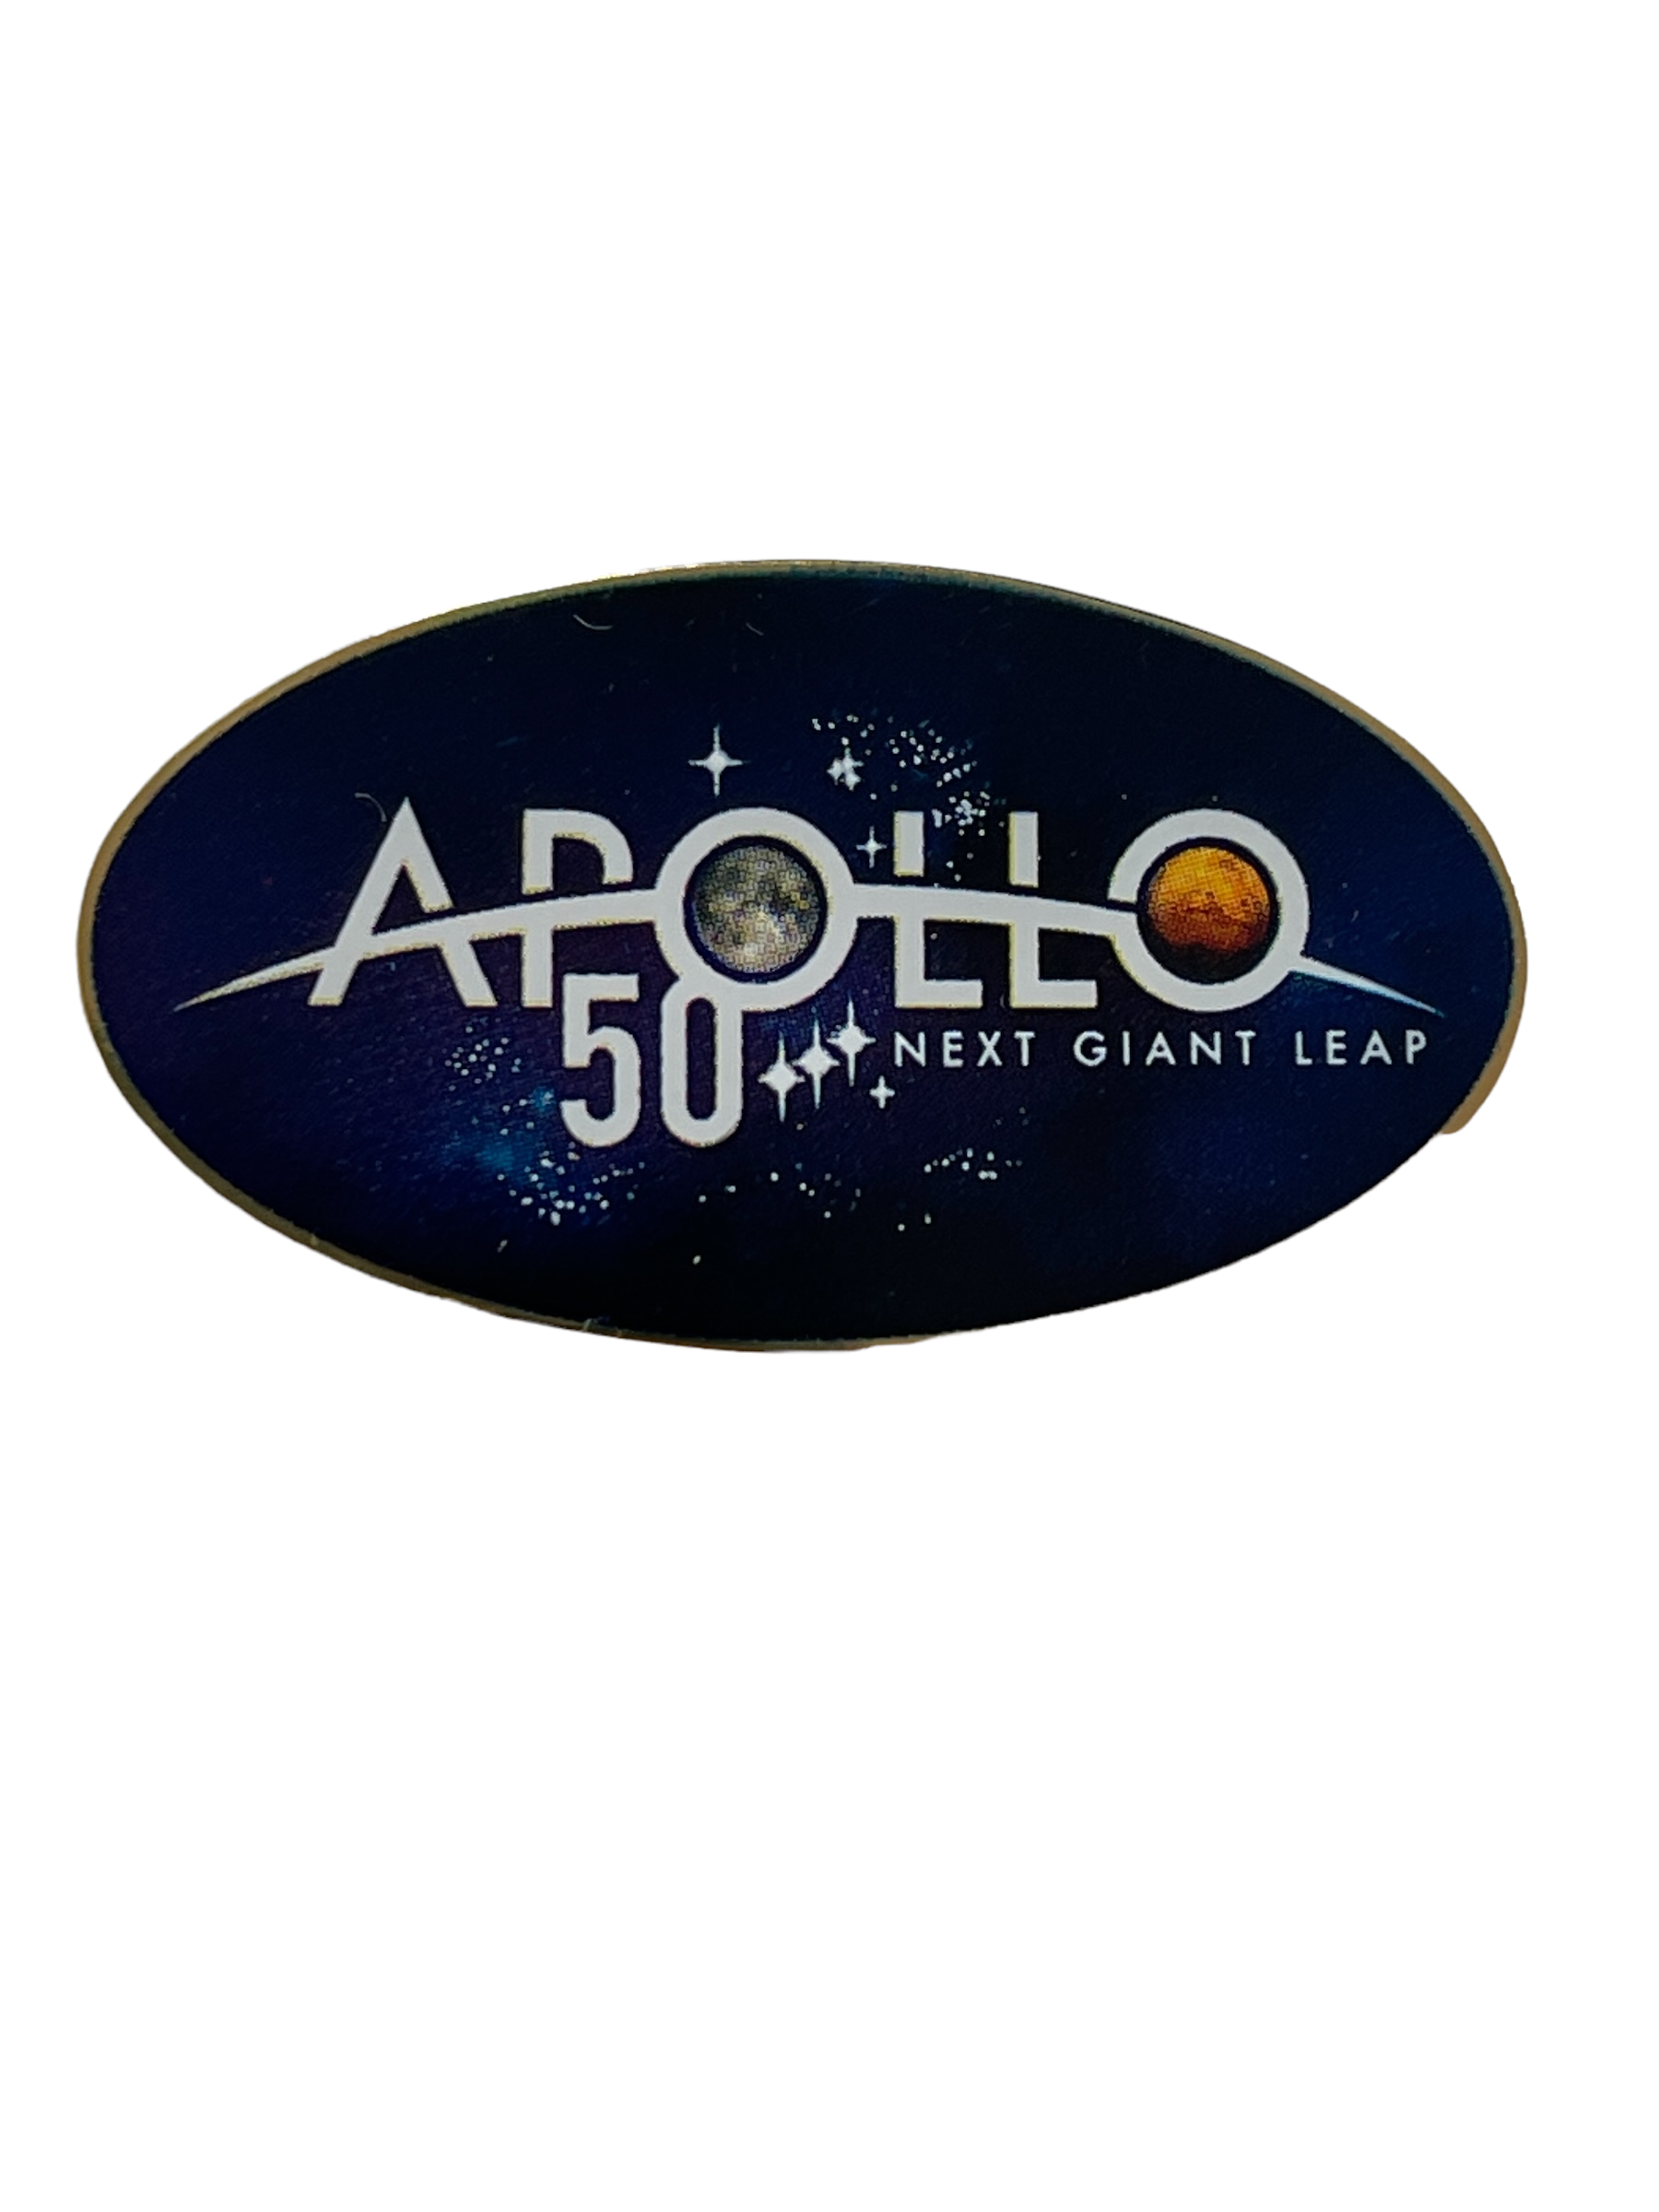 Apollo 50 Years Celebration Pin 'Next Giant Leap' - Image 2 of 3